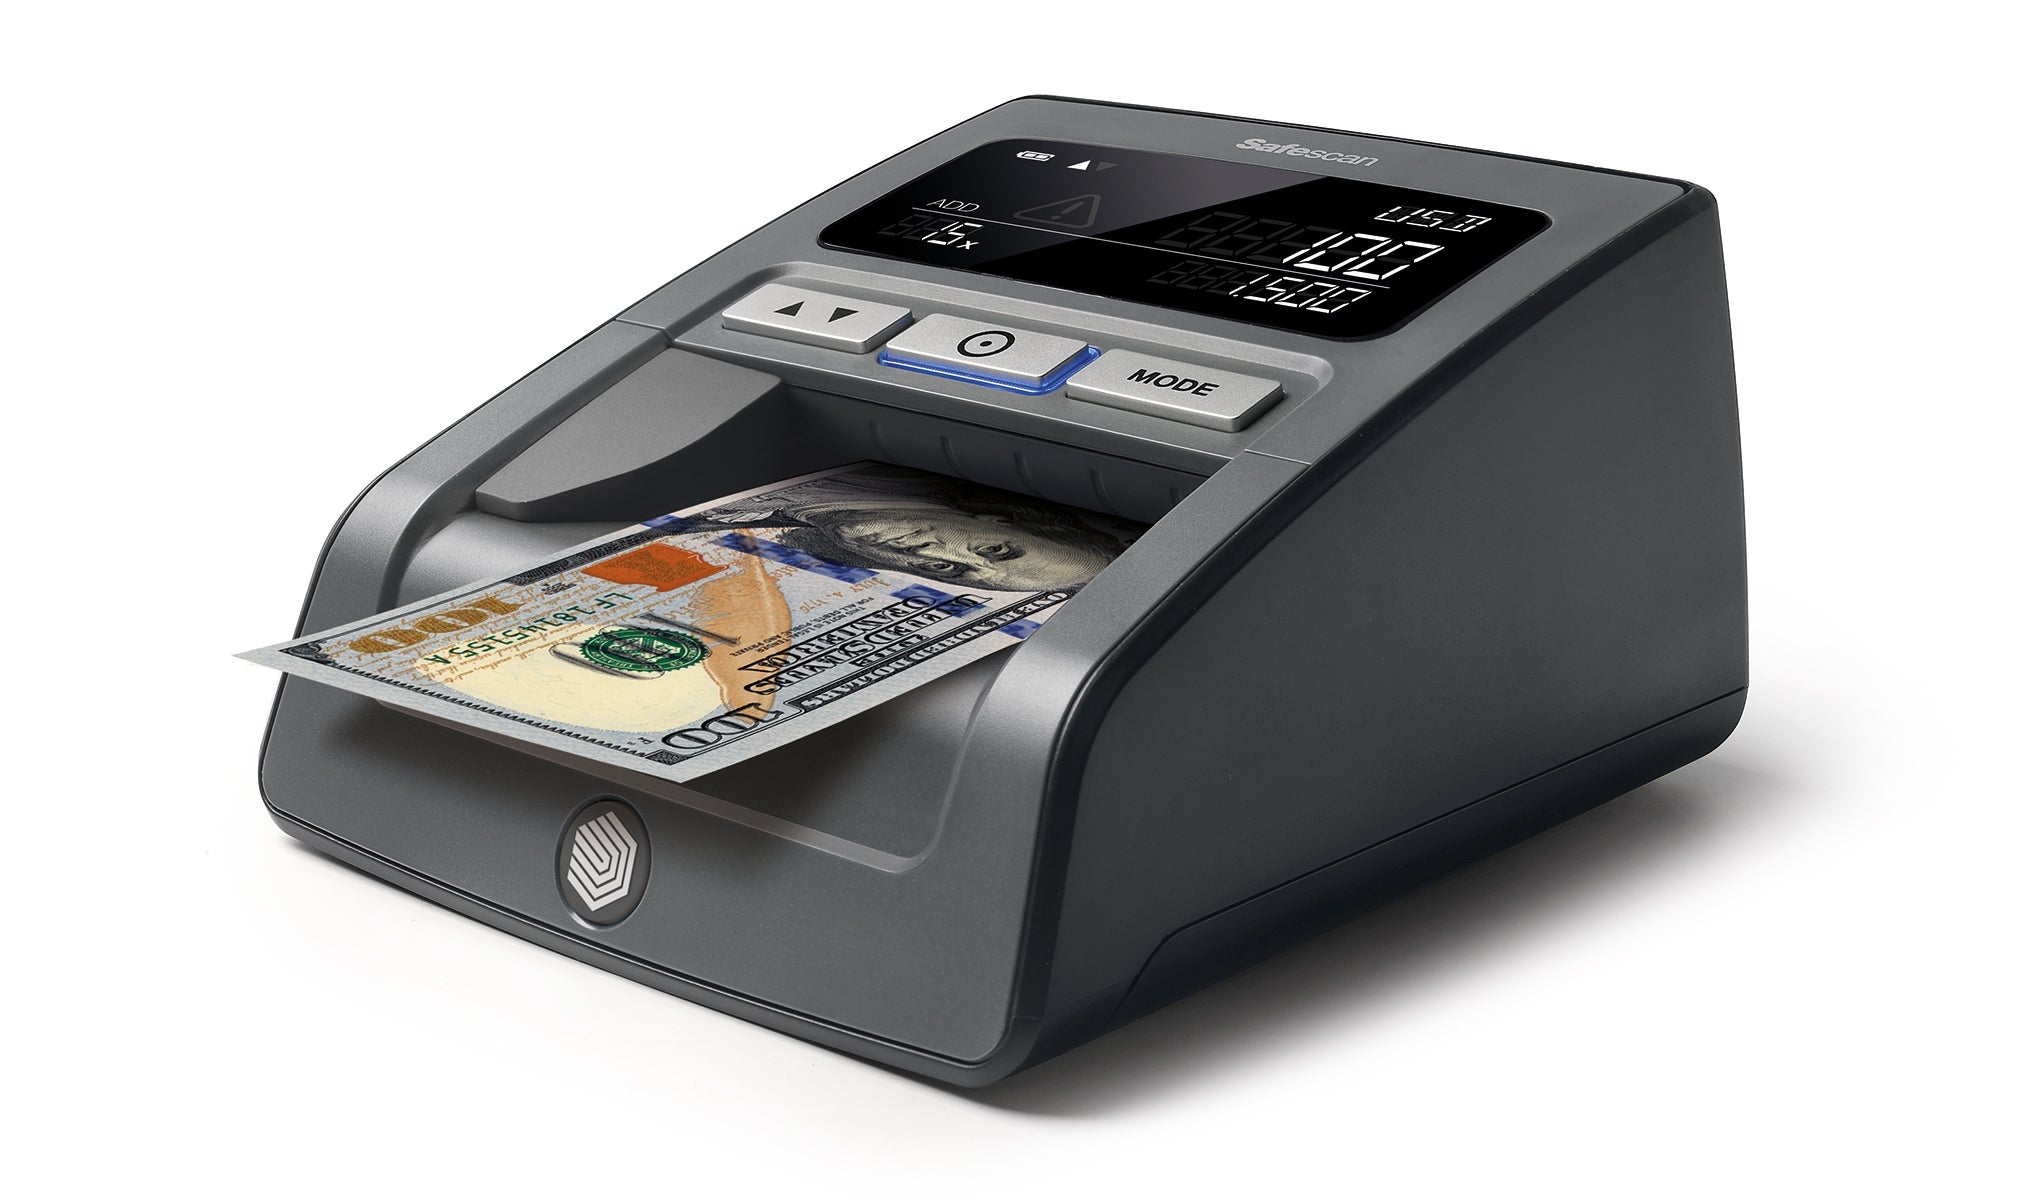 Verifica banconote automatico - Safescan 185-S - Ordina ora!